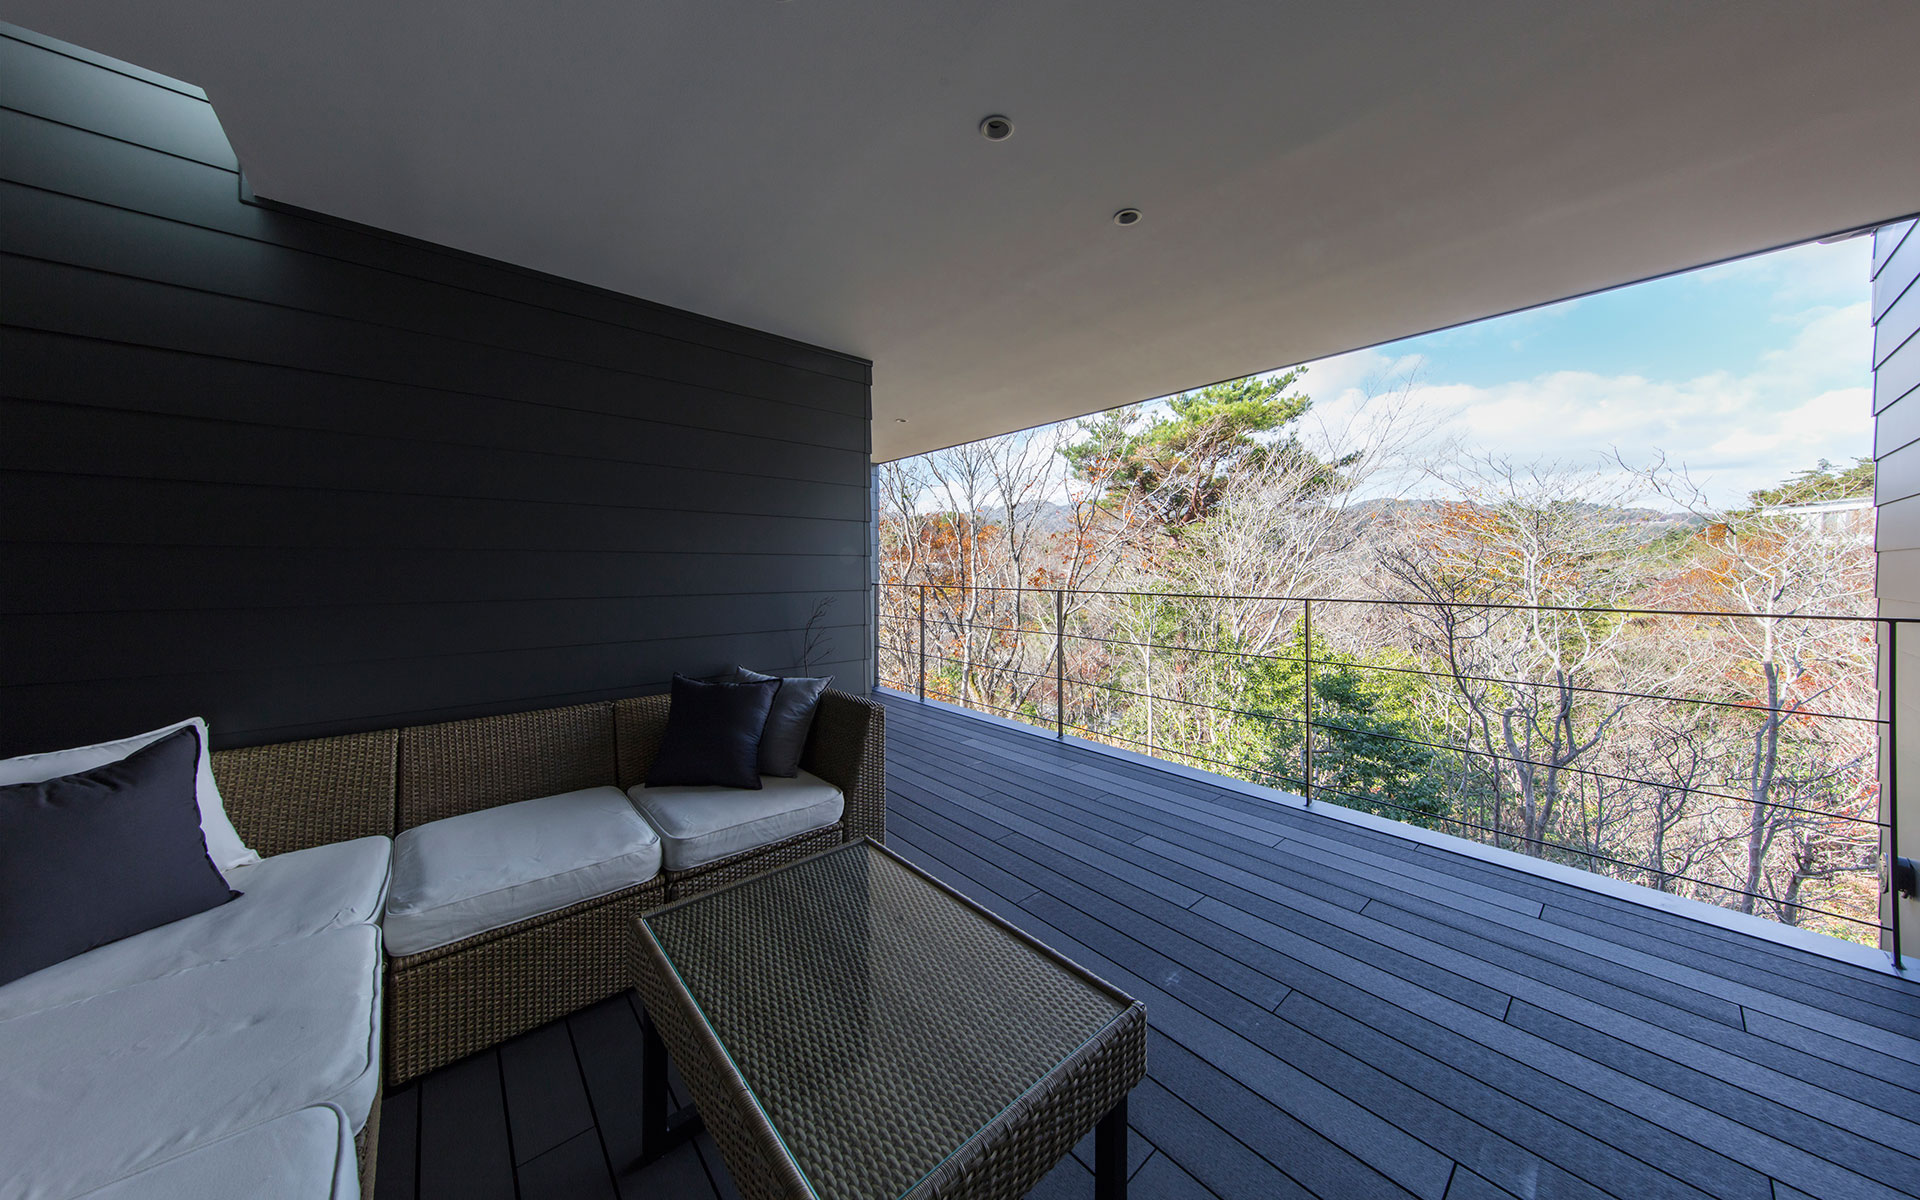 関西建築家の真銅祥一朗設計による芦屋の別荘地に建つ住宅 眺望の良い２階大型バルコニーにあるアウターリビング